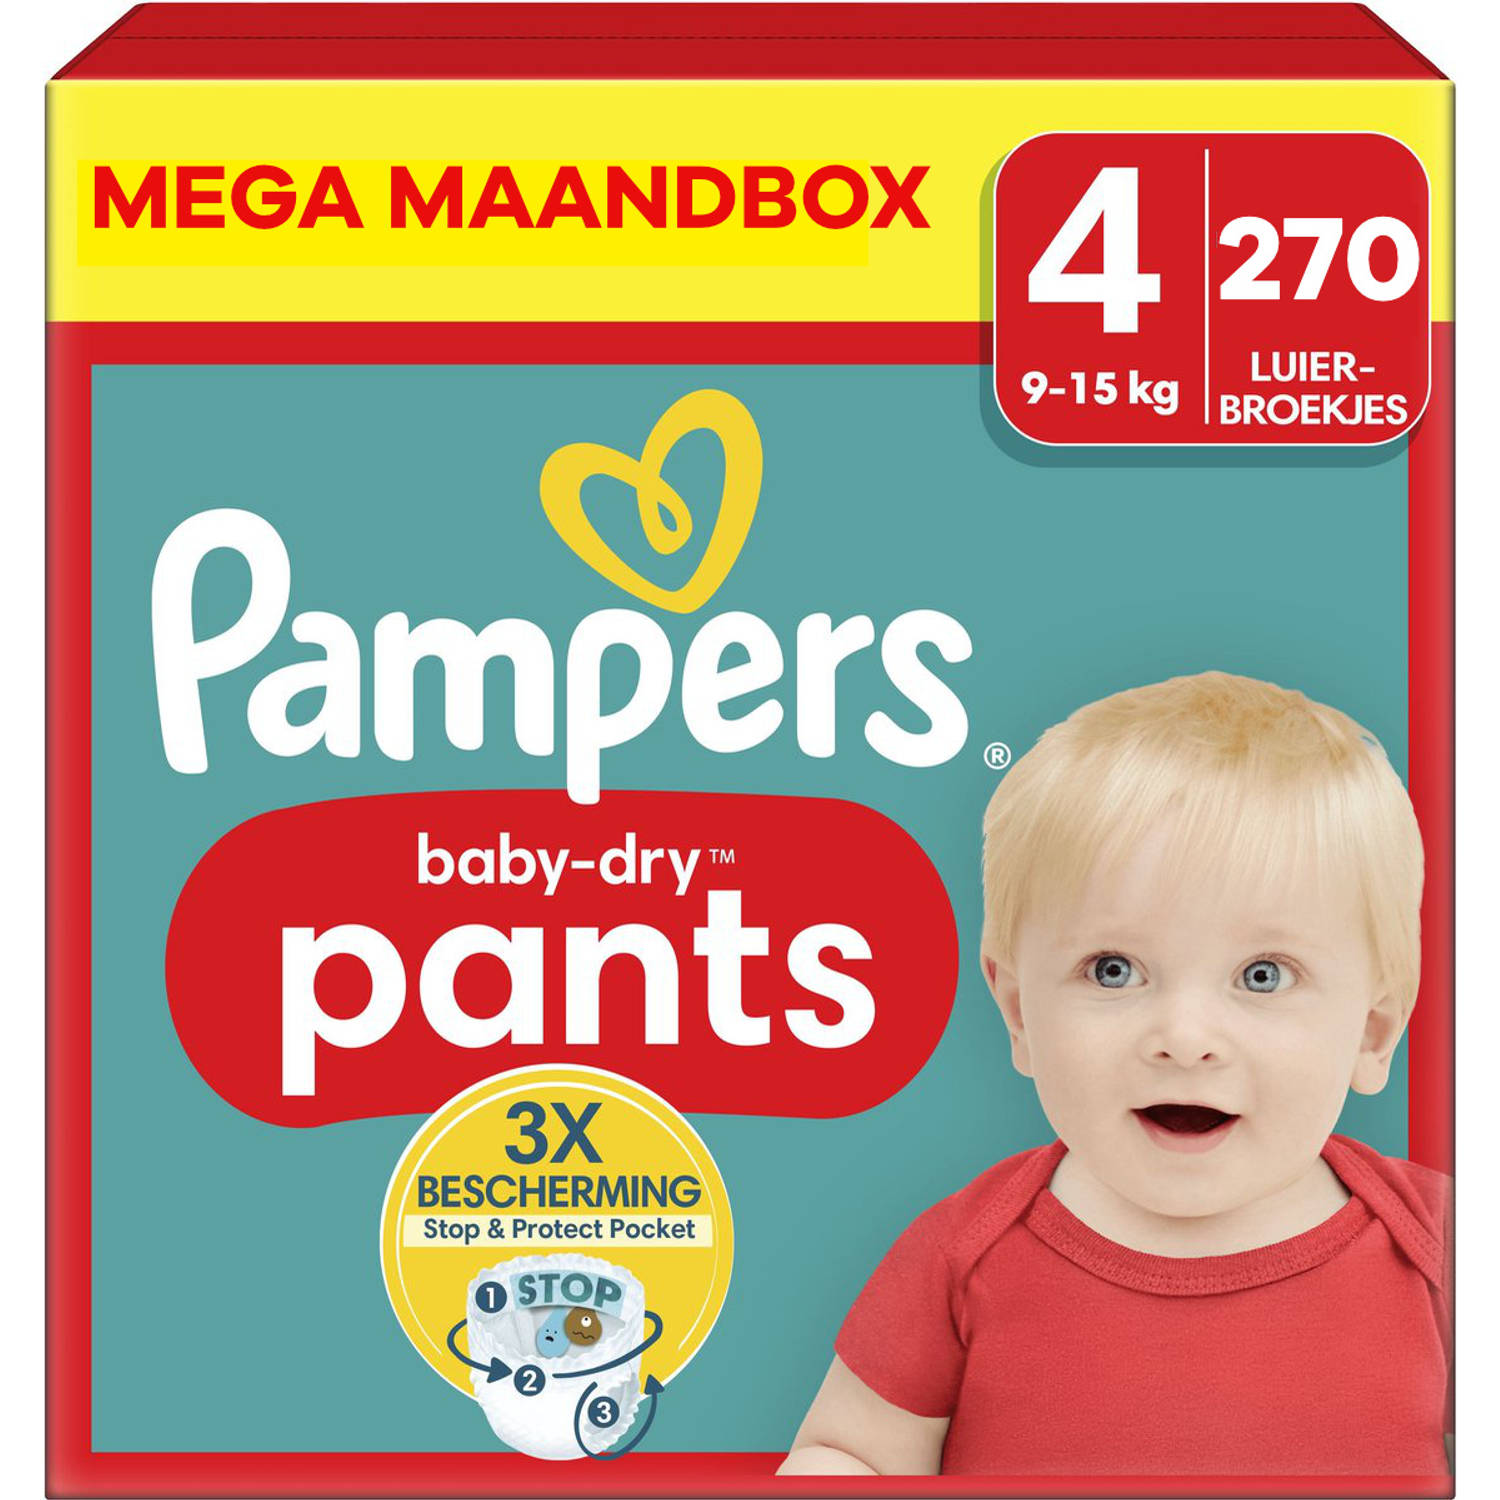 Pampers Baby Dry Pants Maat 4 Mega Maandbox 270 stuks 9-15 KG